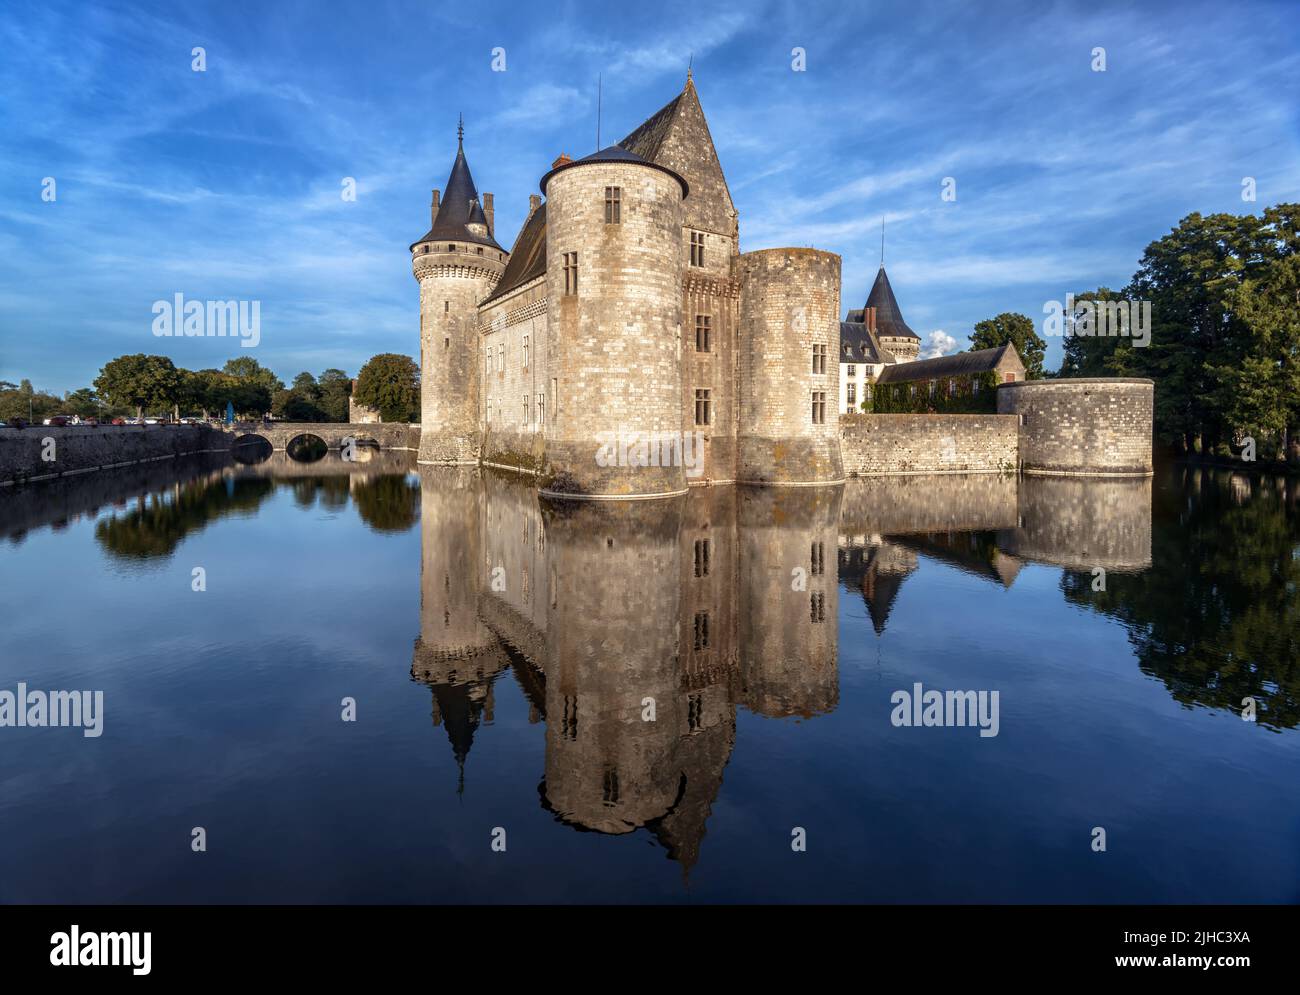 Castillo de Sully-sur-Loire, Francia. Es un punto de referencia del Valle del Loira. Vista panorámica de castillo medieval francés como fortaleza, paisaje con el viejo mon Foto de stock